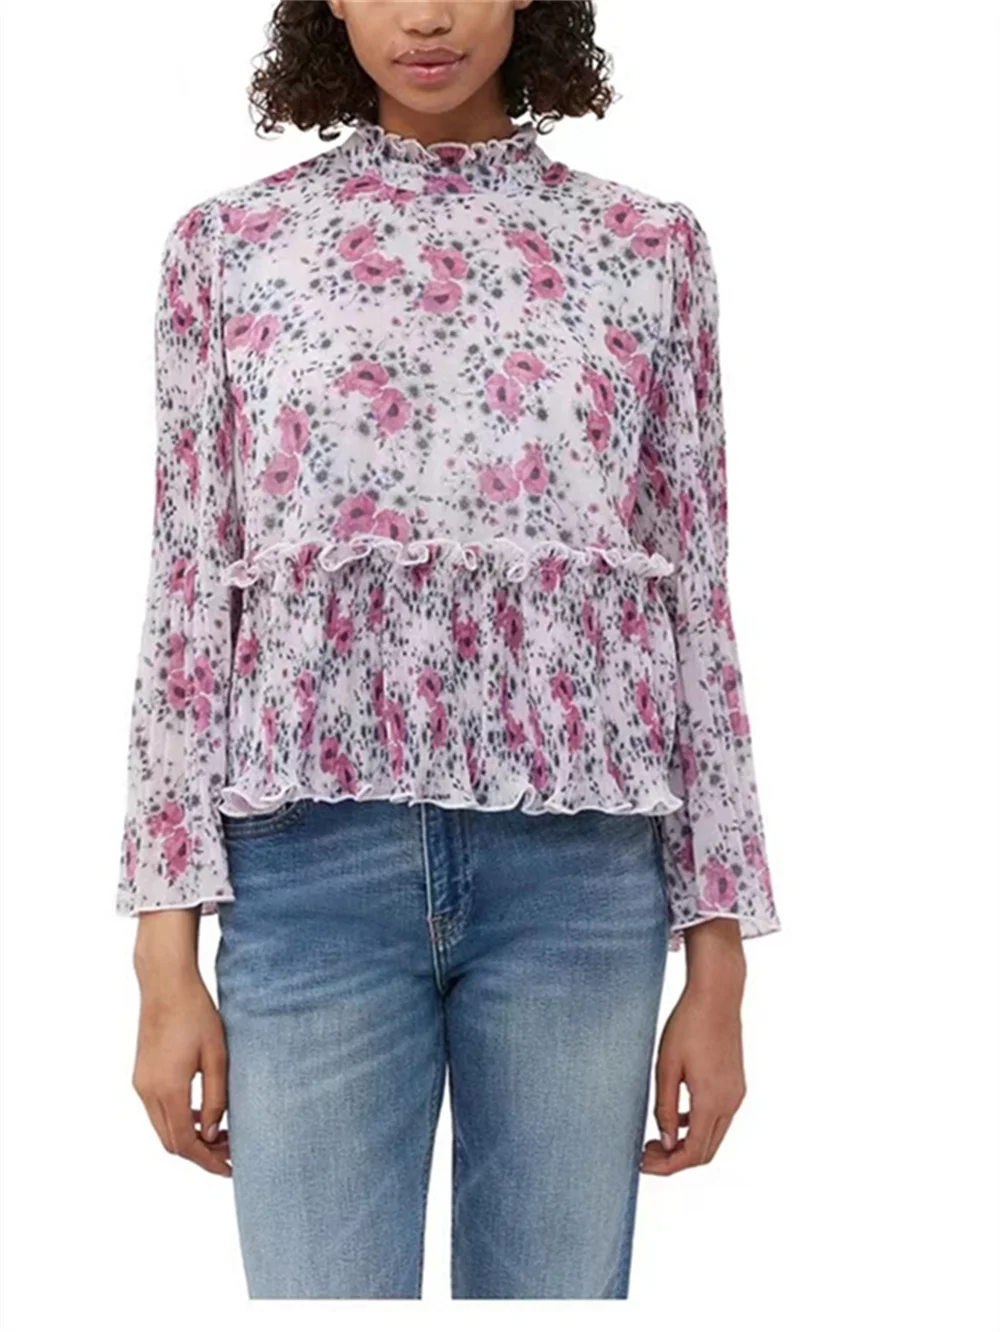 

Женская плиссированная блузка, элегантная милая блузка с цветочным принтом, воротником-стойкой, расклешенными рукавами и оборками, лето 2023